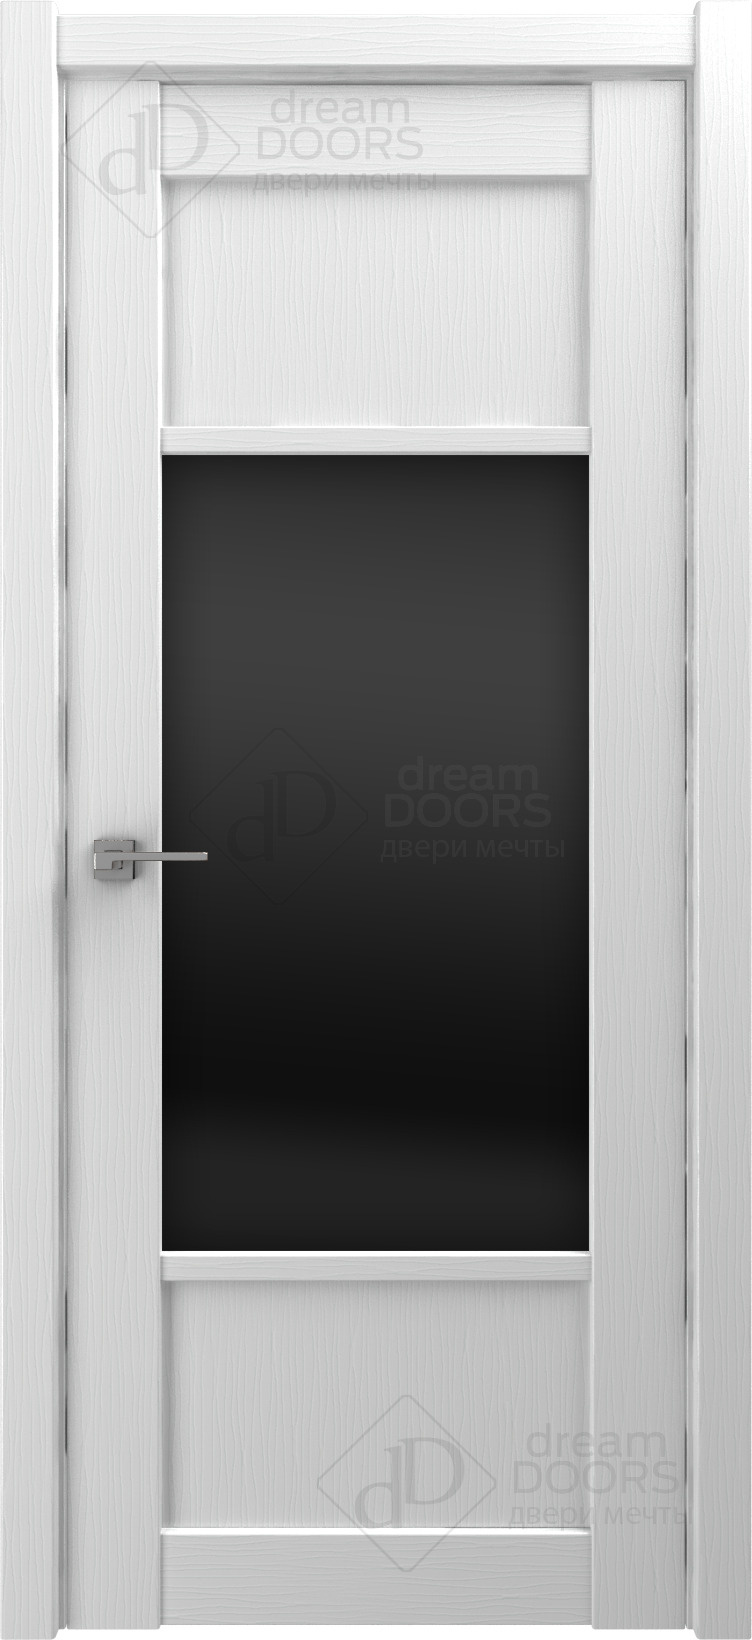 Dream Doors Межкомнатная дверь V26, арт. 18243 - фото №2